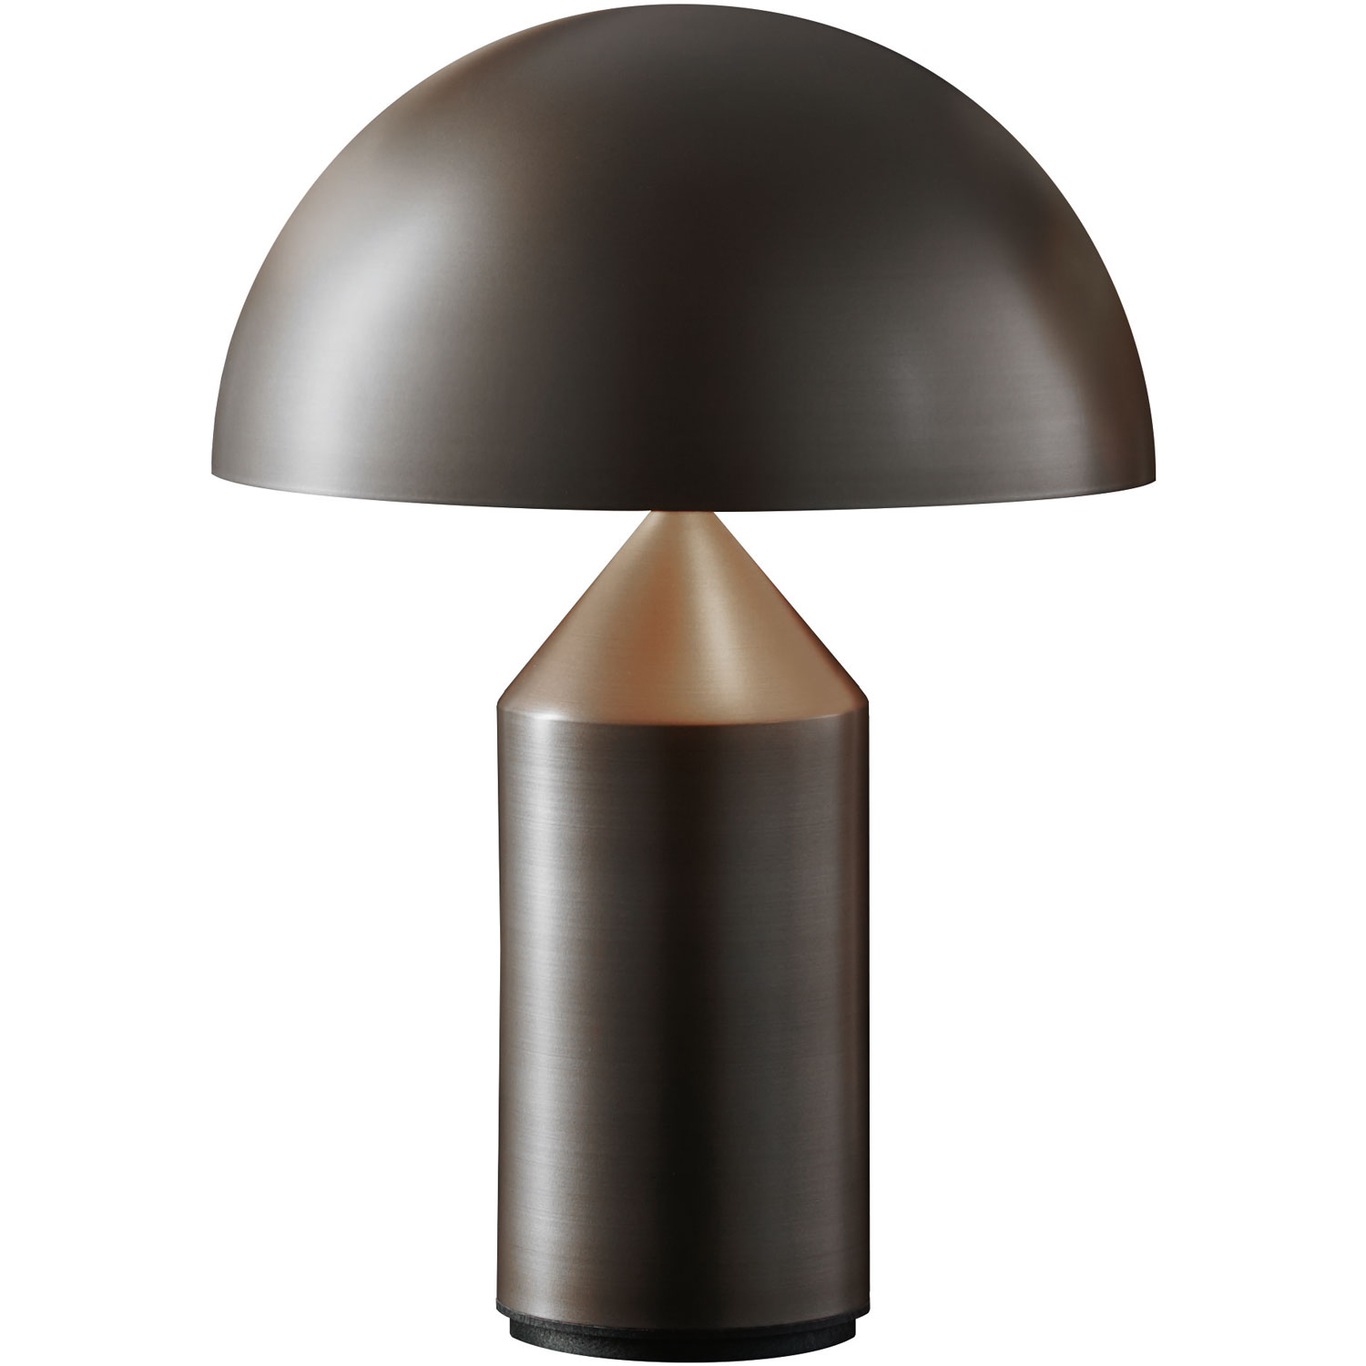 Atollo 238 Bordslampa 35 cm, Satin Bronze